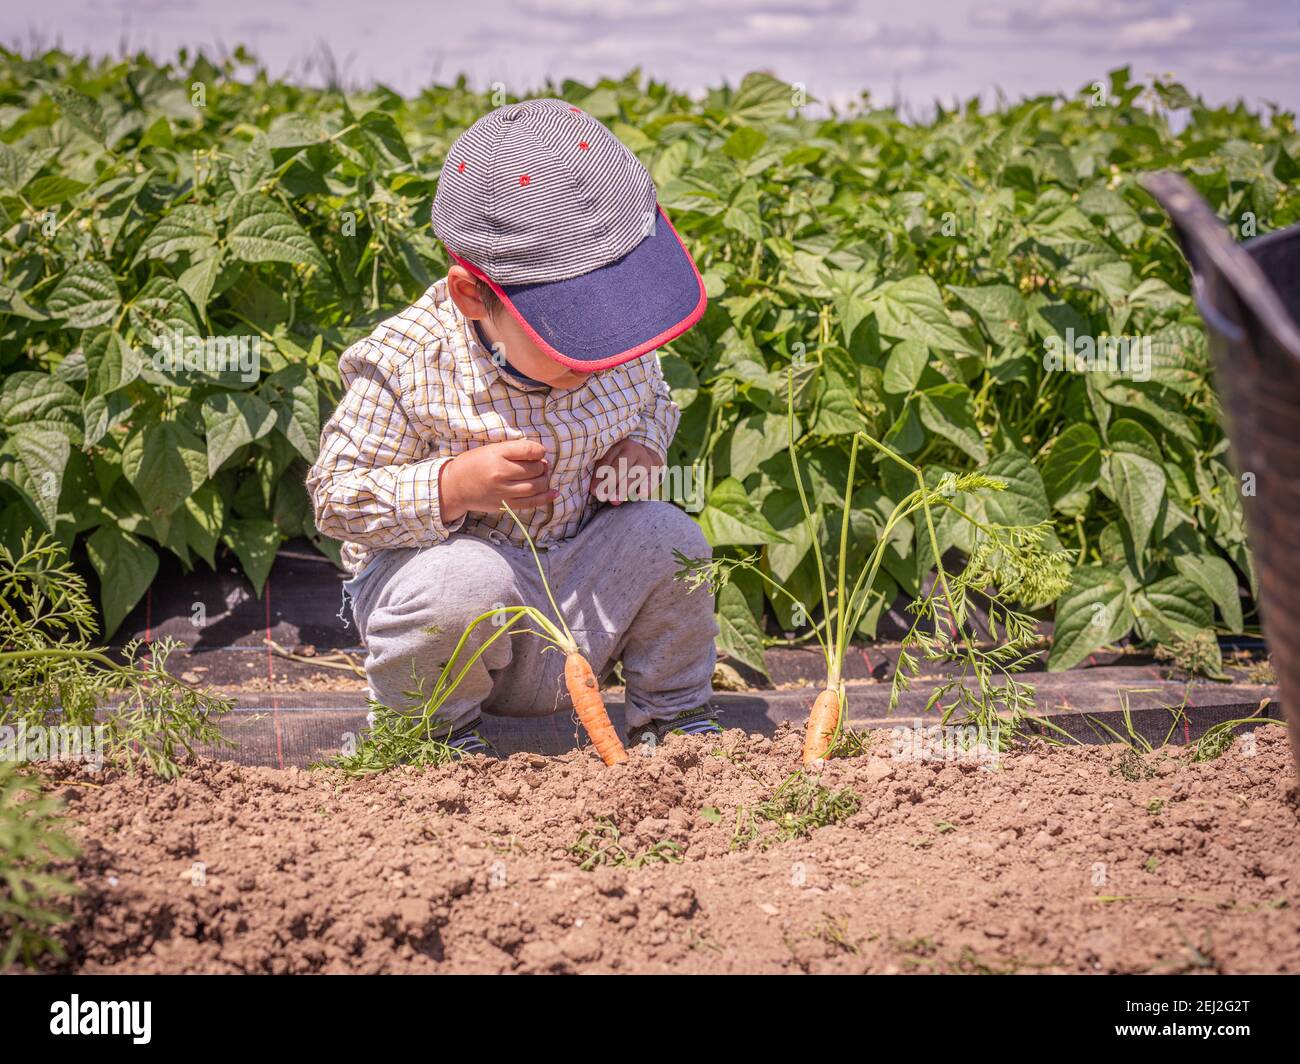 Vegetali di piantatura del bambino. Un ragazzo asiatico osserva le carote nel giardino. Felice infanzia e raccolto. Vevey, Svizzera. Foto Stock